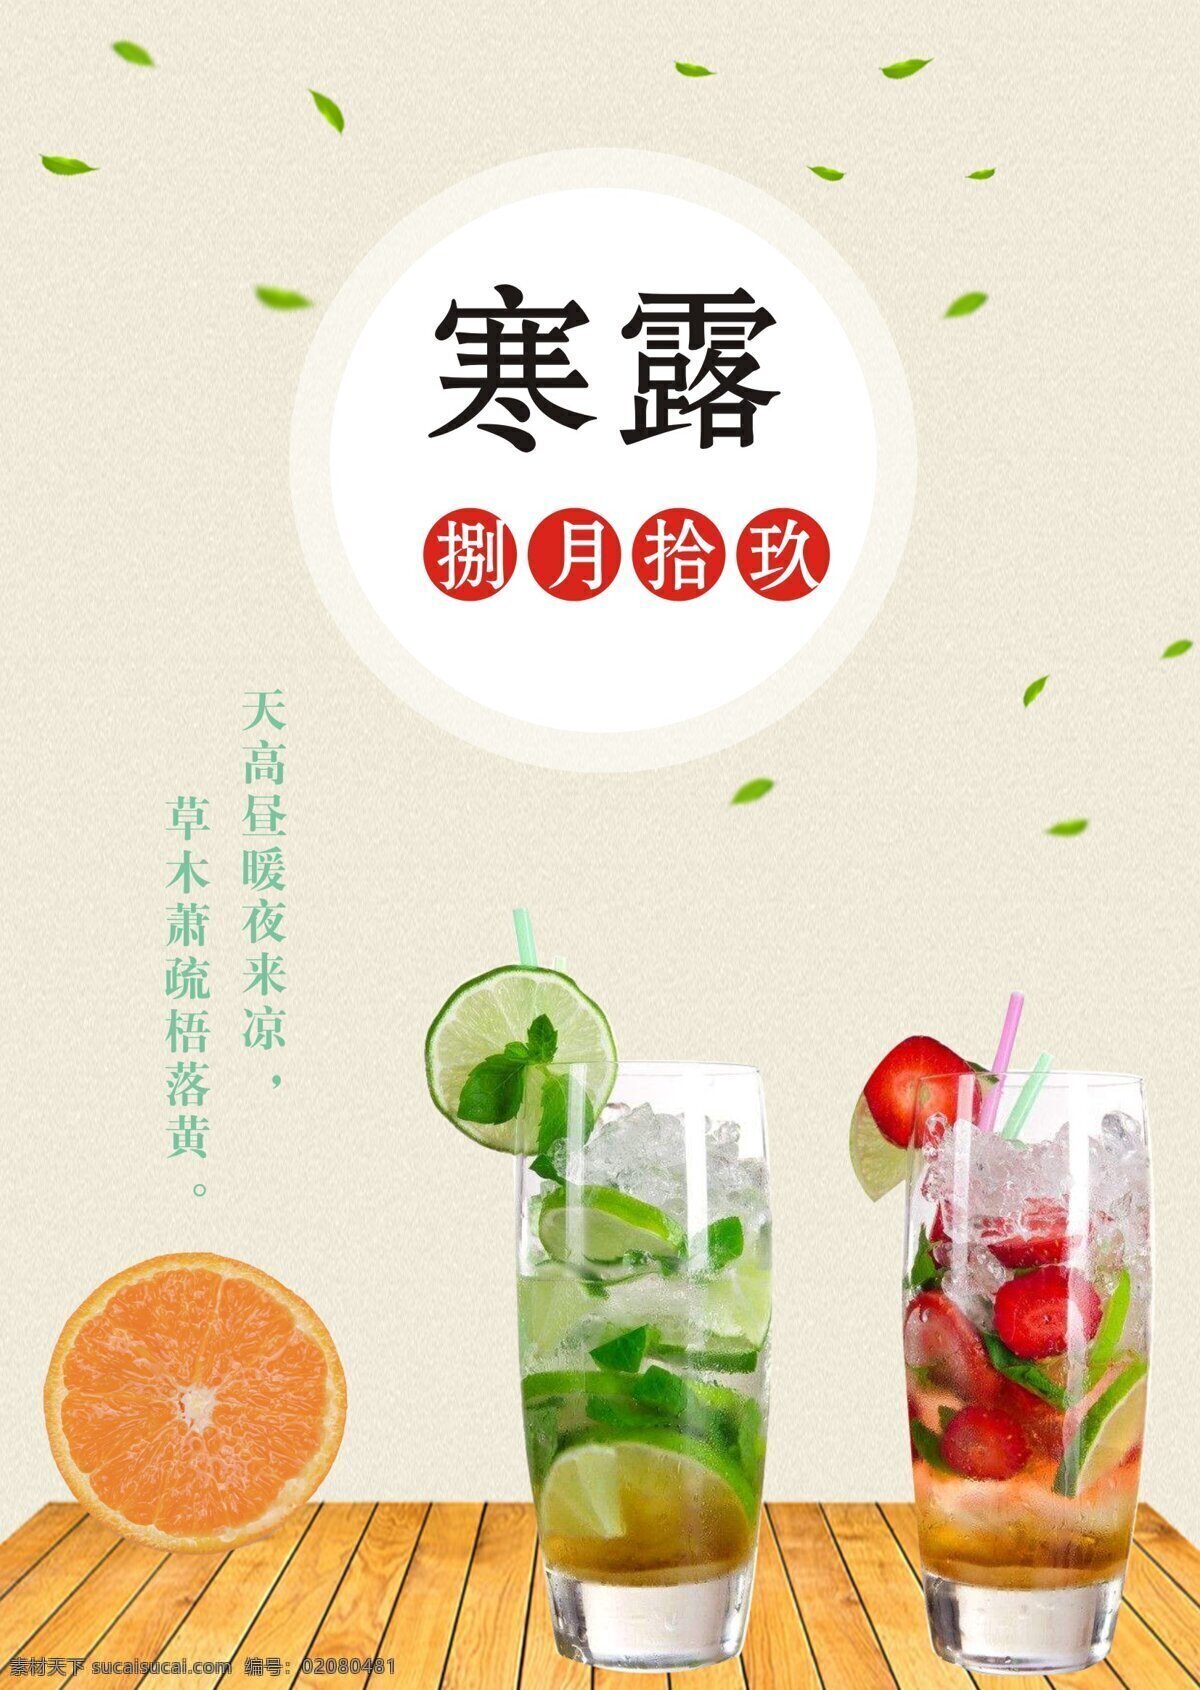 寒露 饮品 促销 海报 简约海报设计 柚子水 草莓水 夏日 捌月